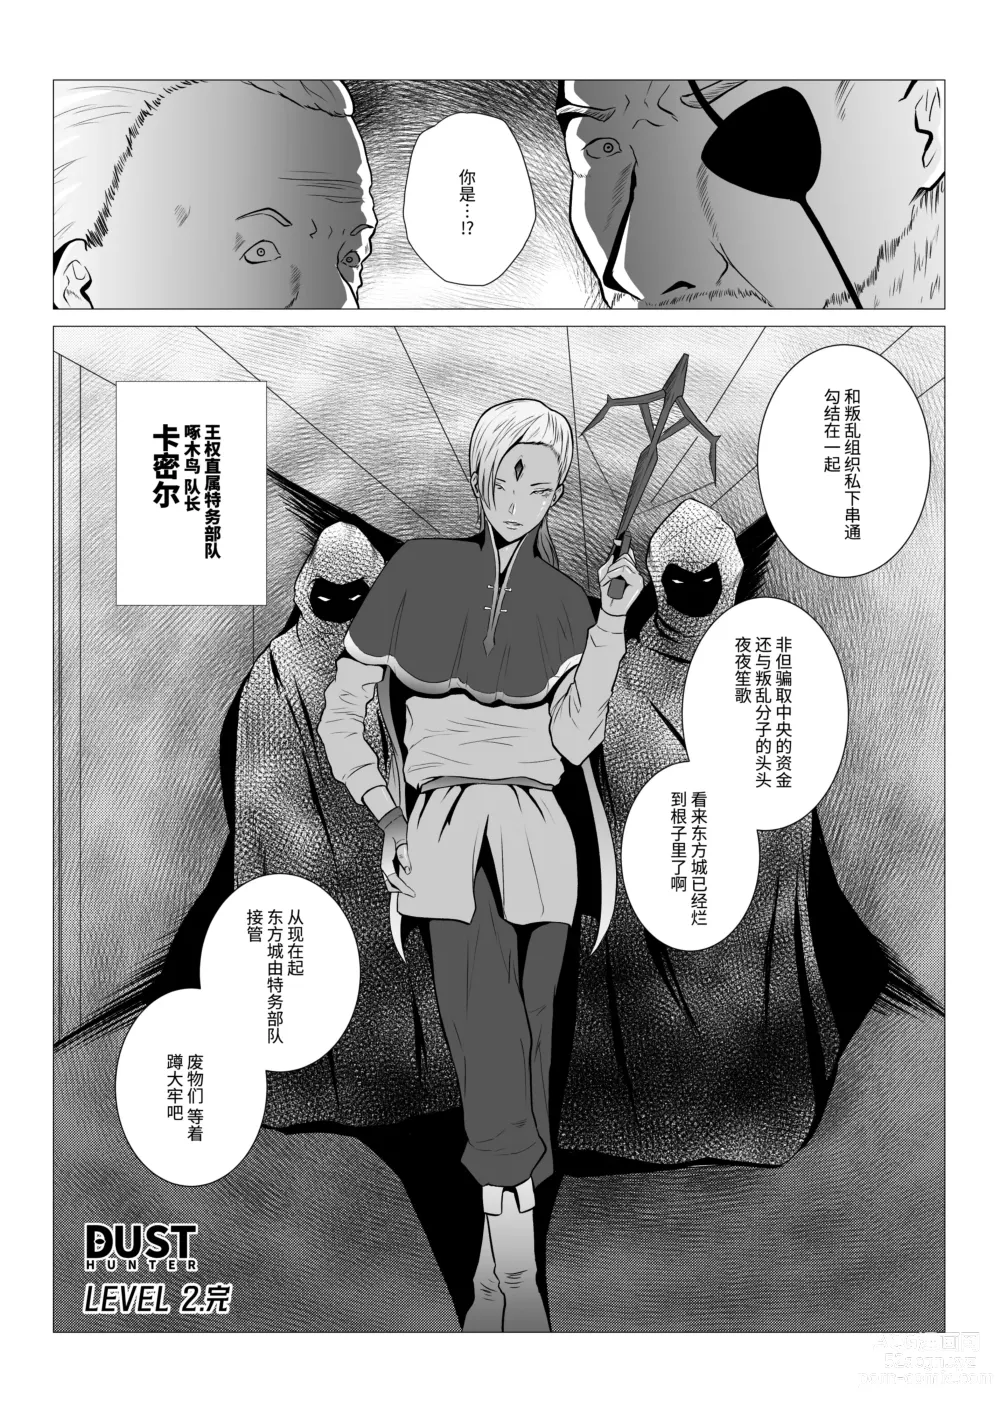 Page 46 of doujinshi DustHunter~Divine Skeleton Hunter~Episode 2